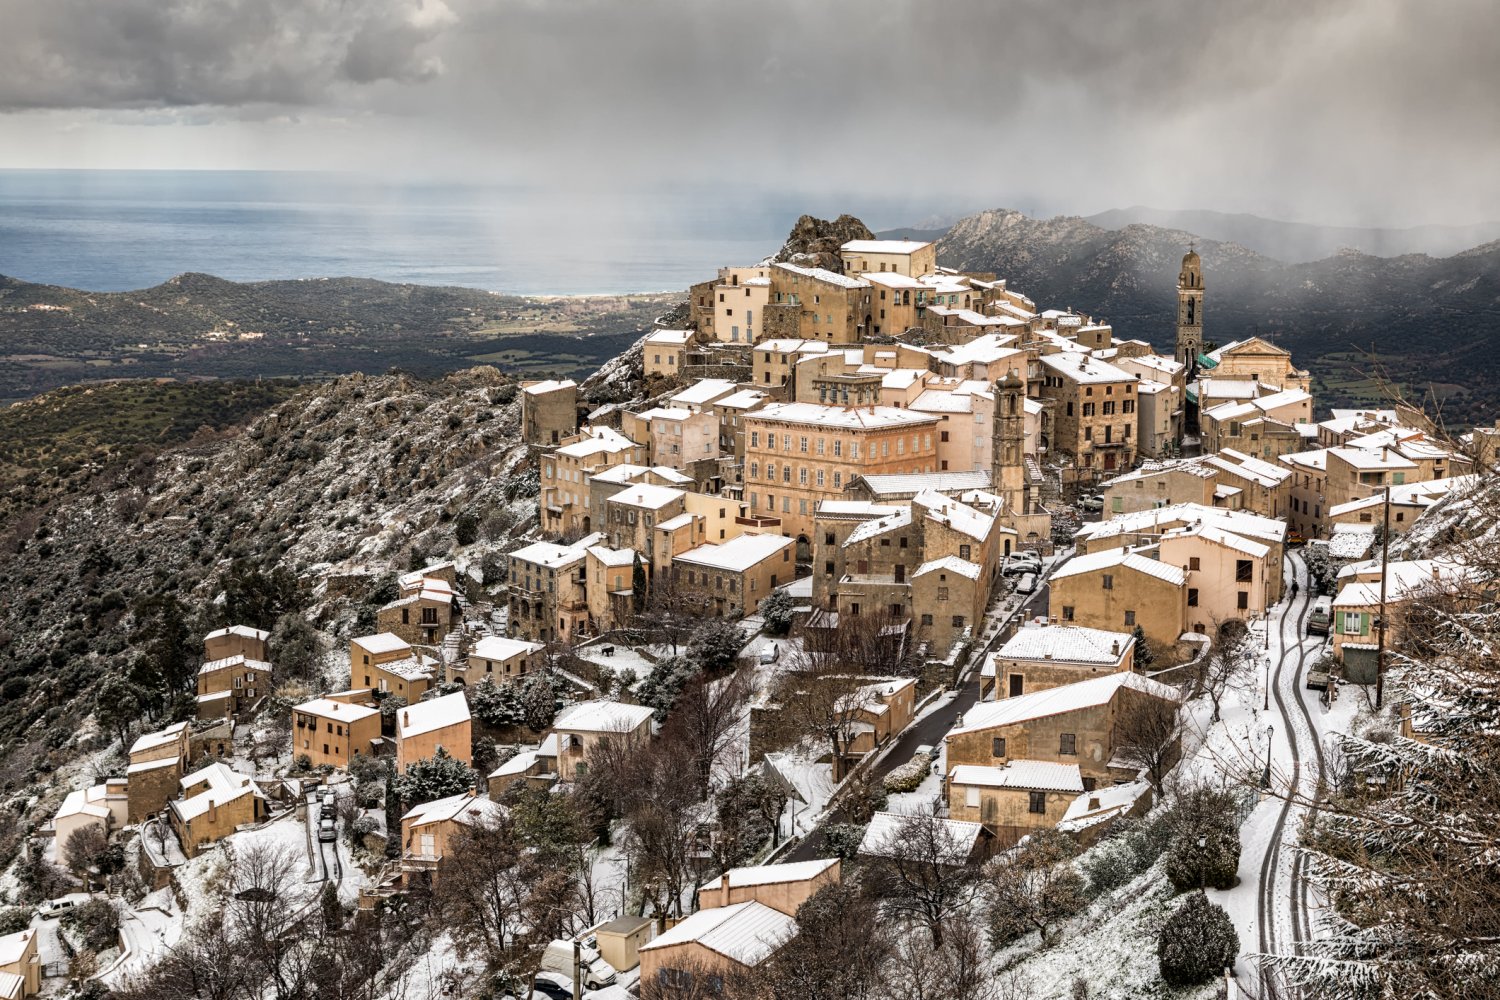 Neige sur le village de montagne de Speloncato en Corse